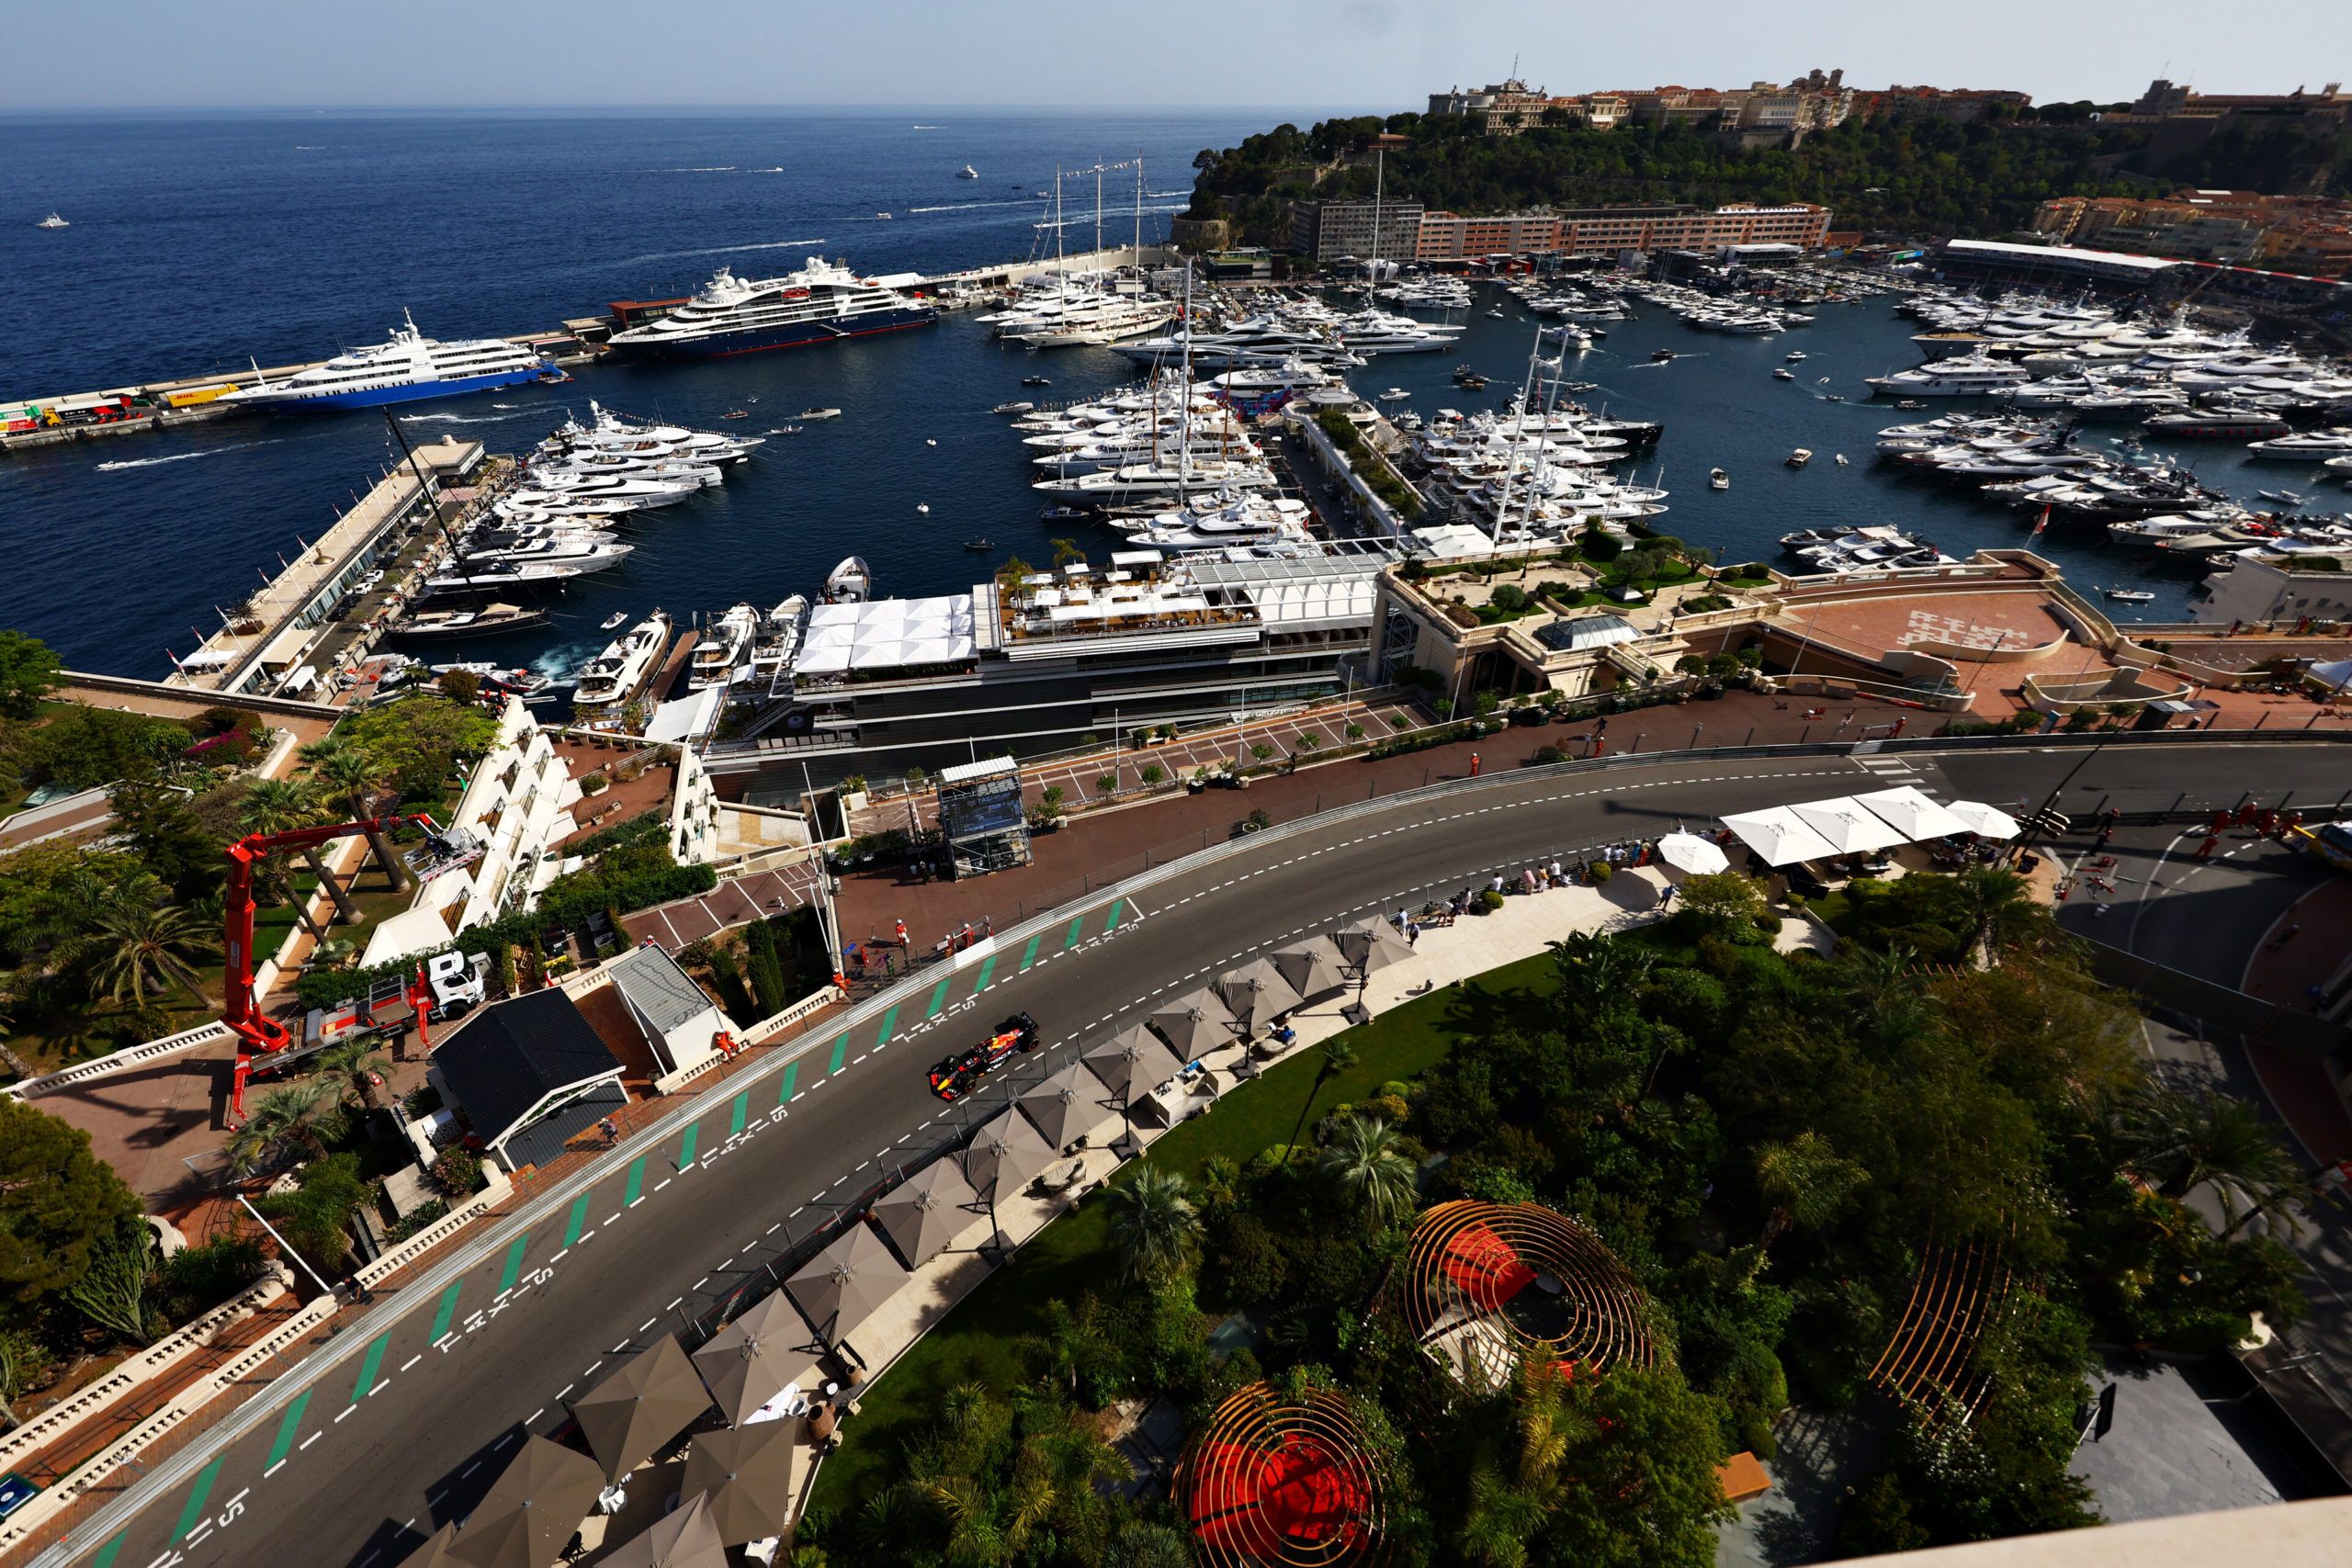 F1, FIA, Monaco GP